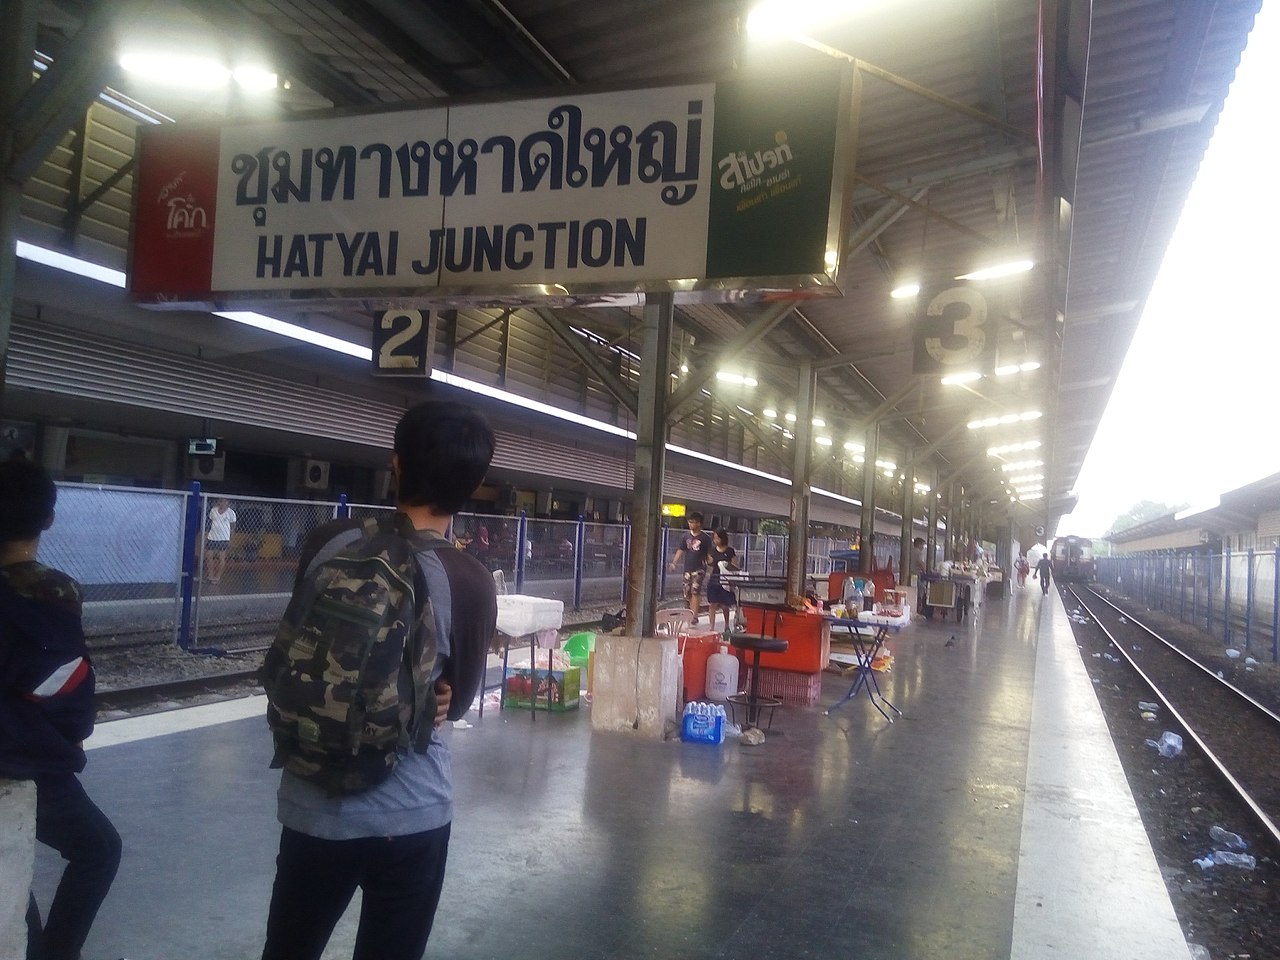 Hat Yai Junction railway station in Hat Yai City, Songkhla